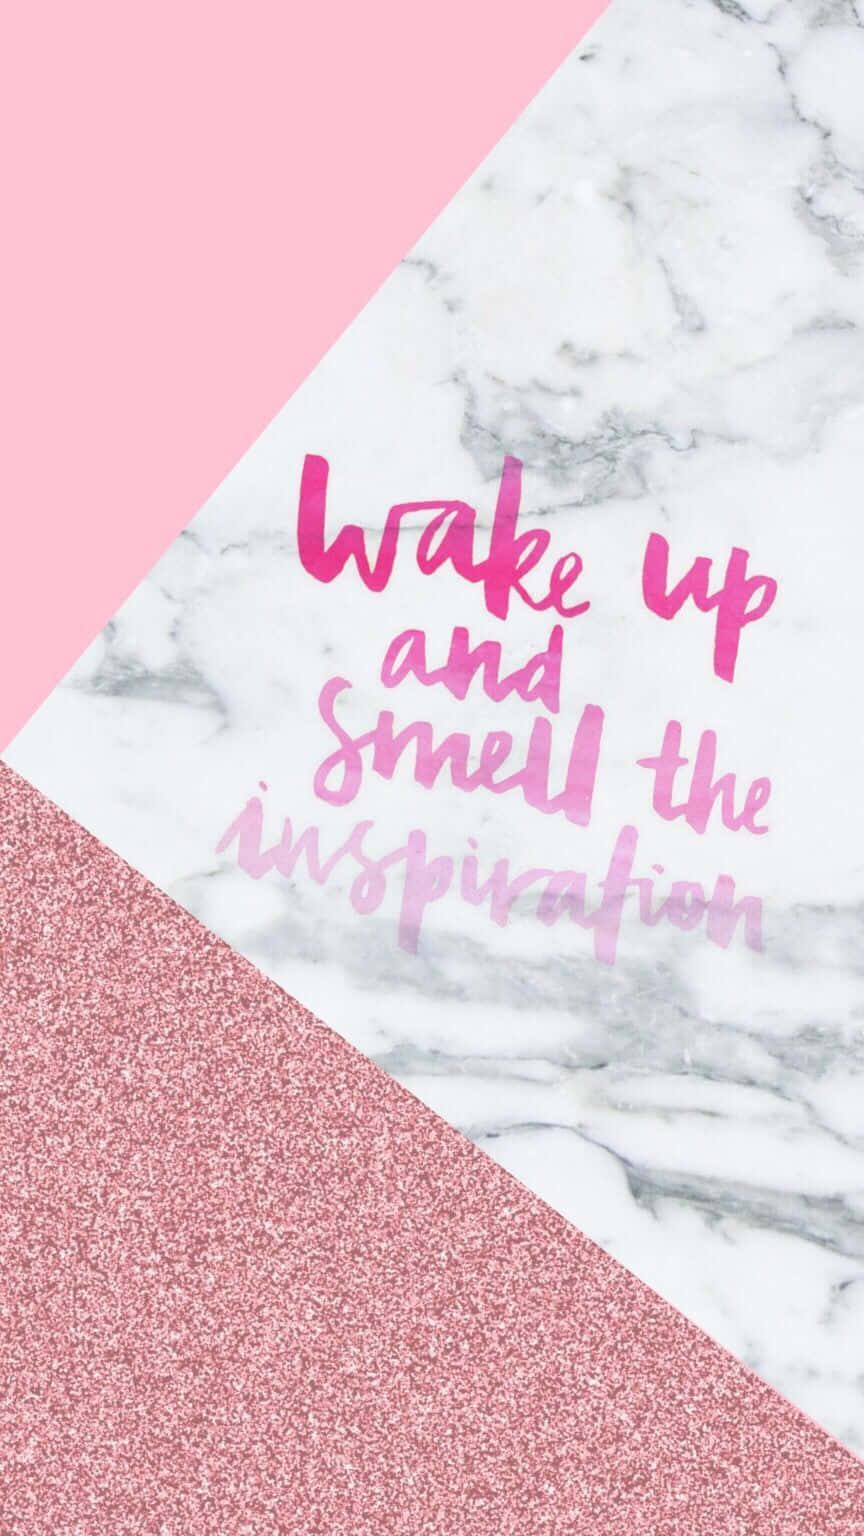 Vågn op og lugt til inspiration Wallpaper